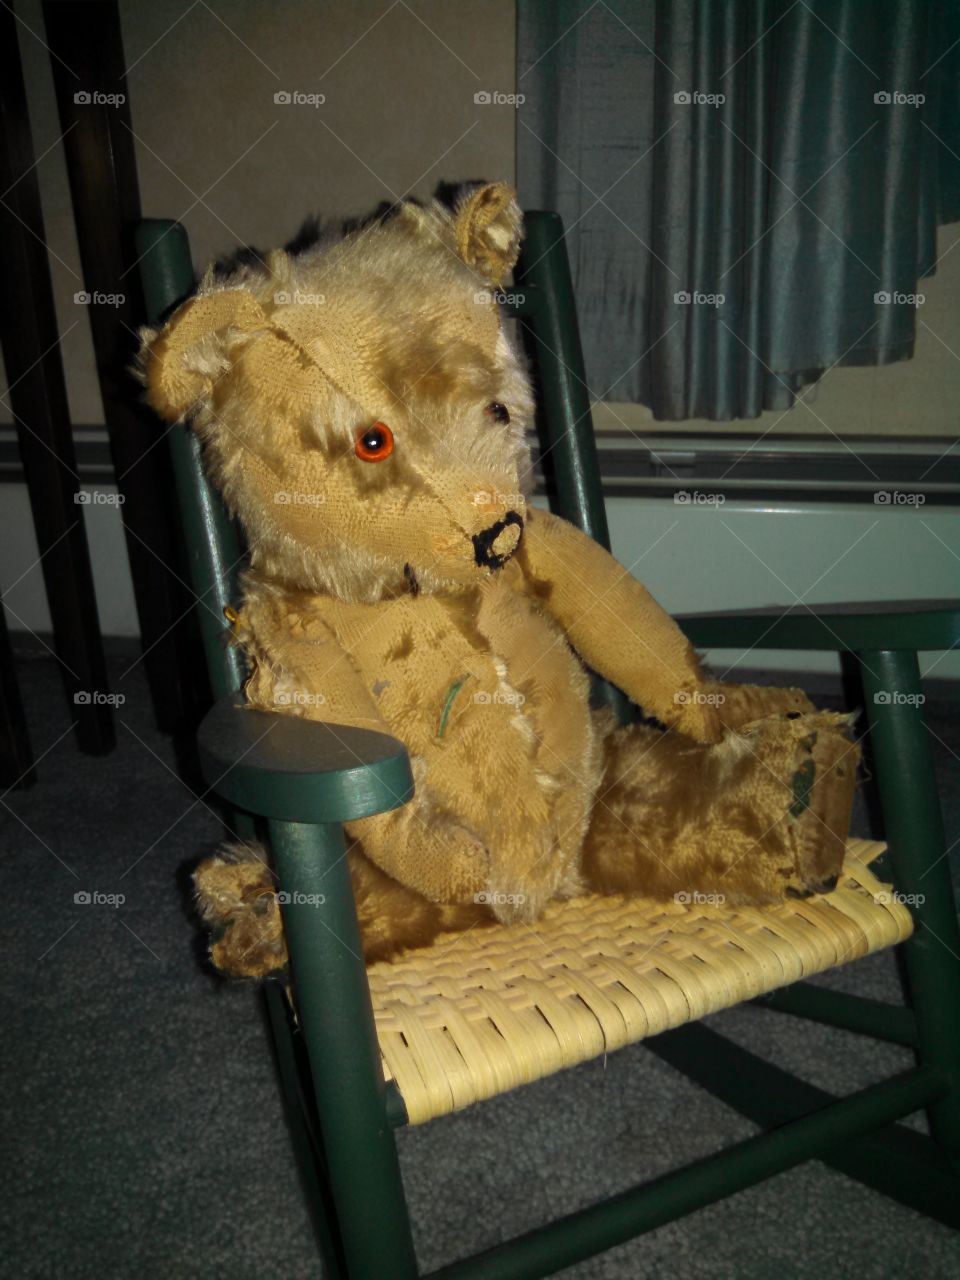 Teddy Boy. My mom's well-loved childhood teddy bear